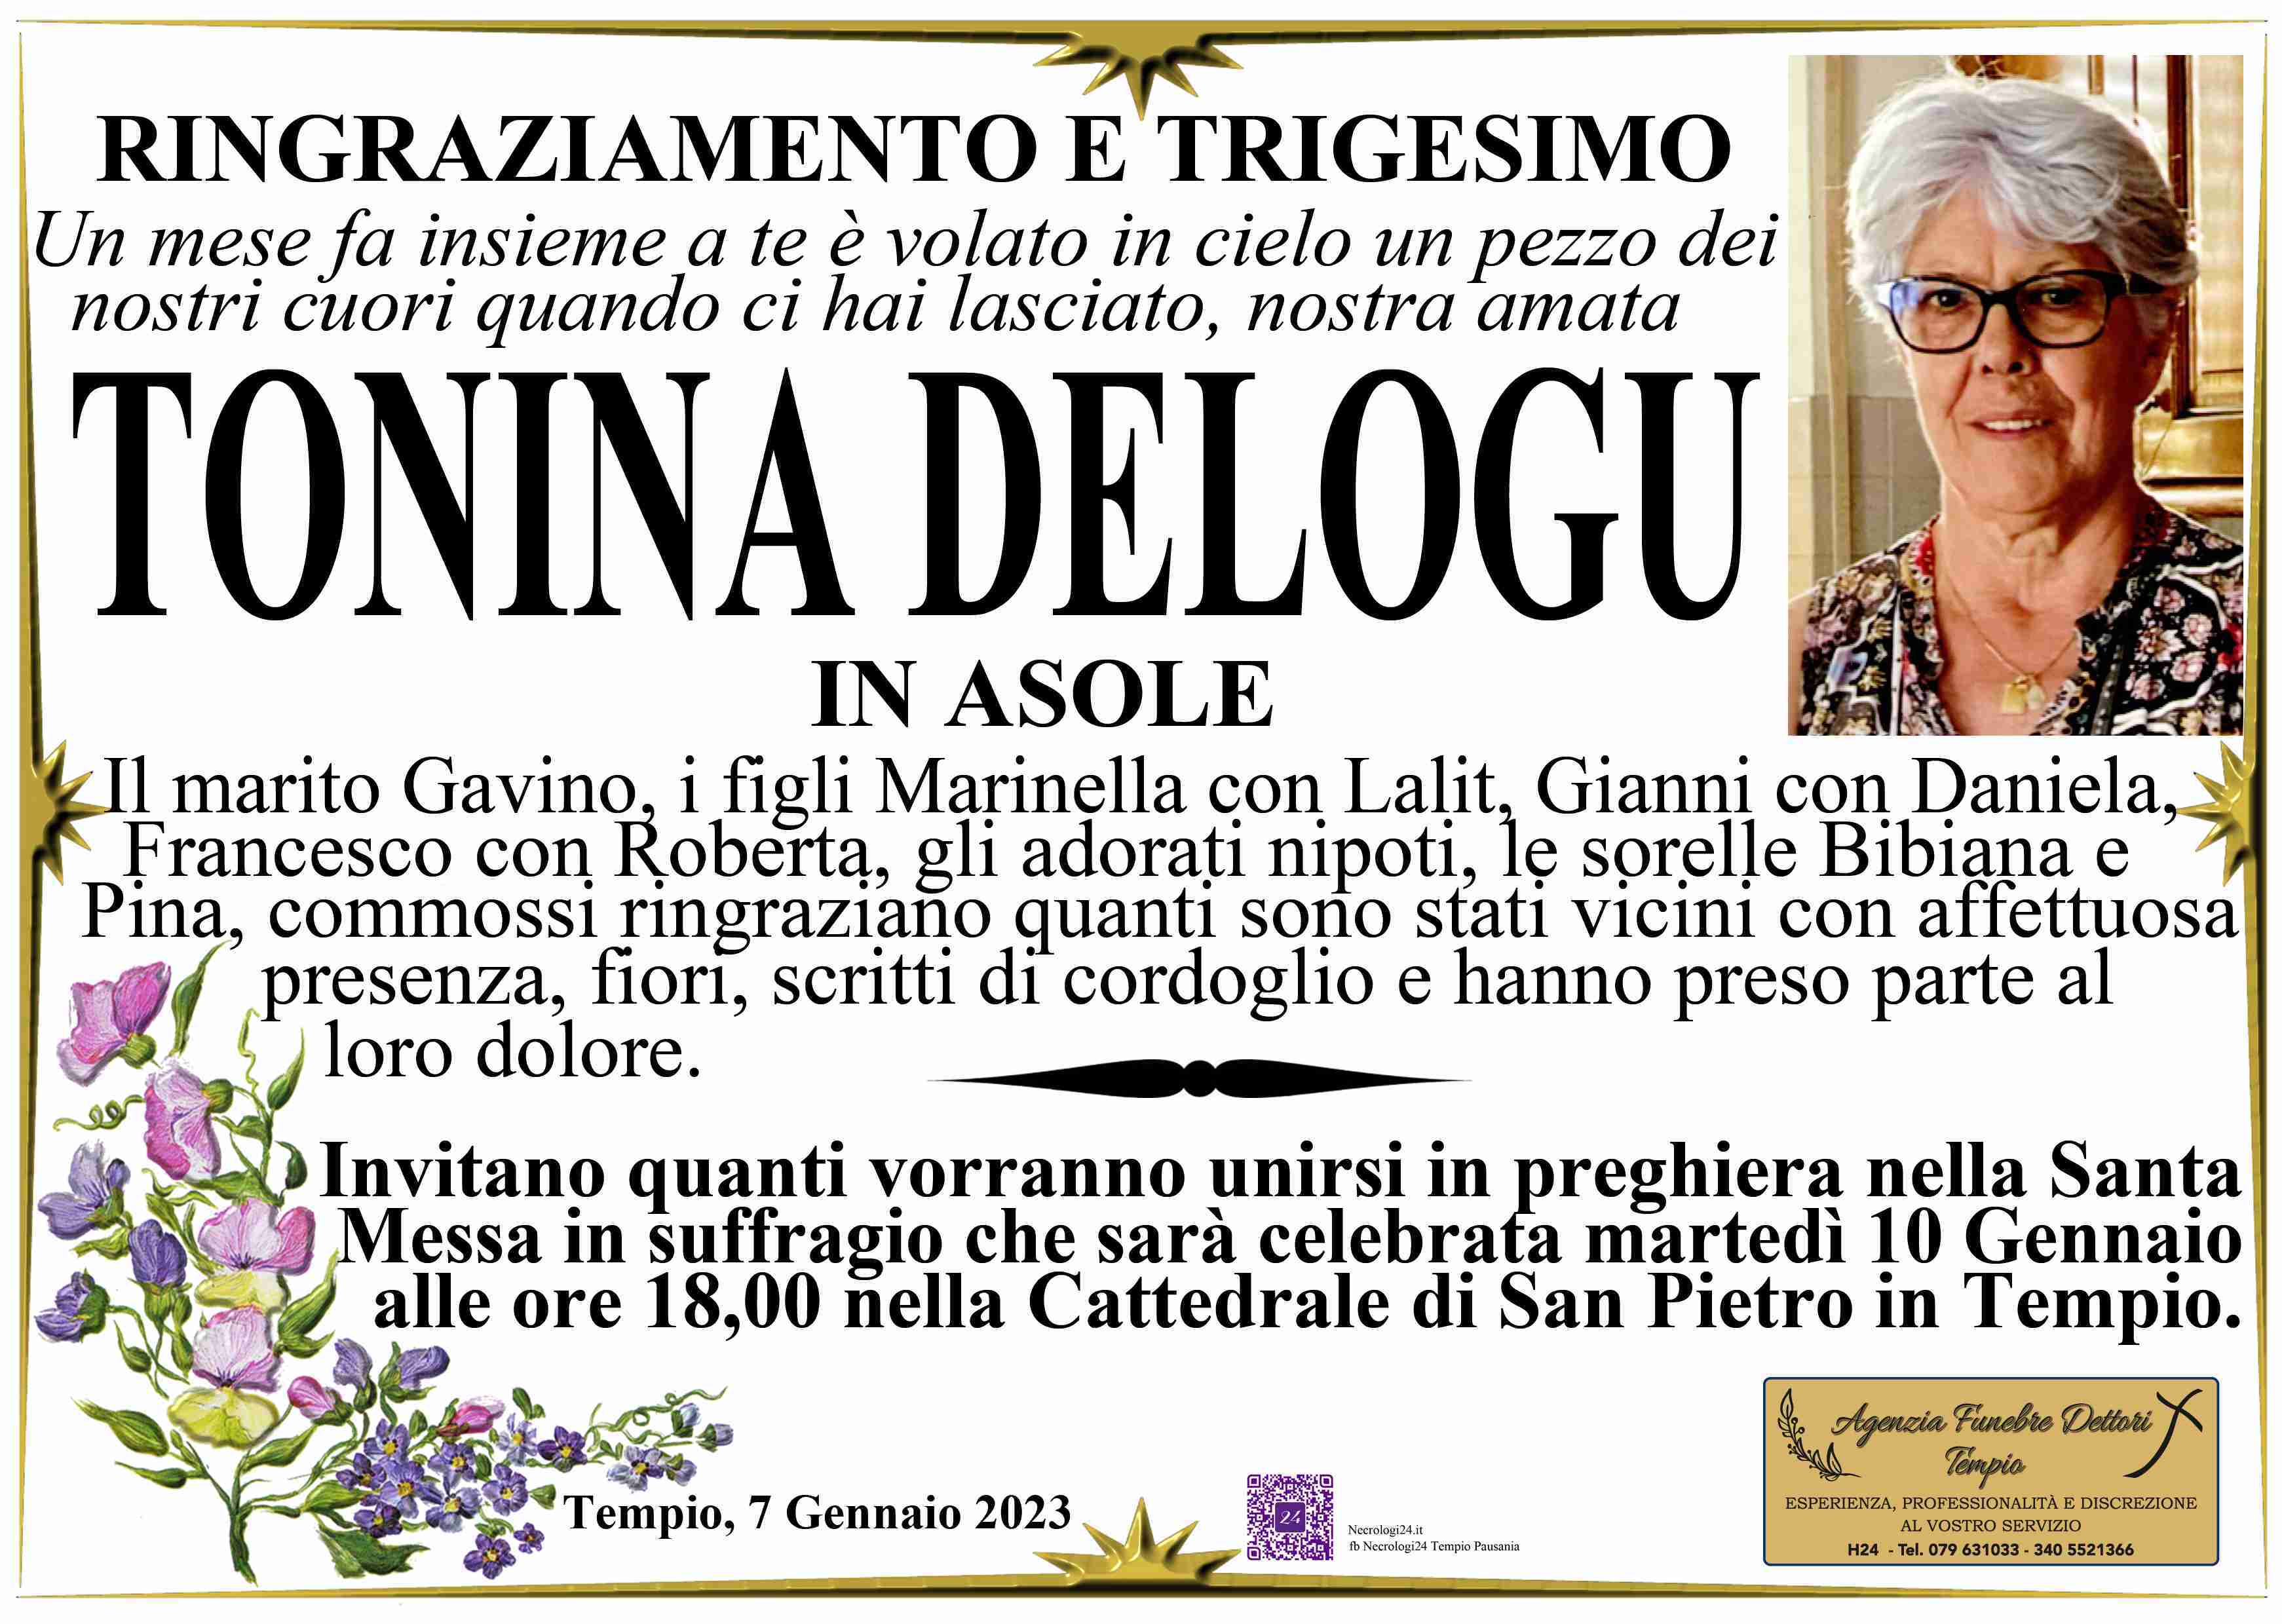 Antonia Delogu